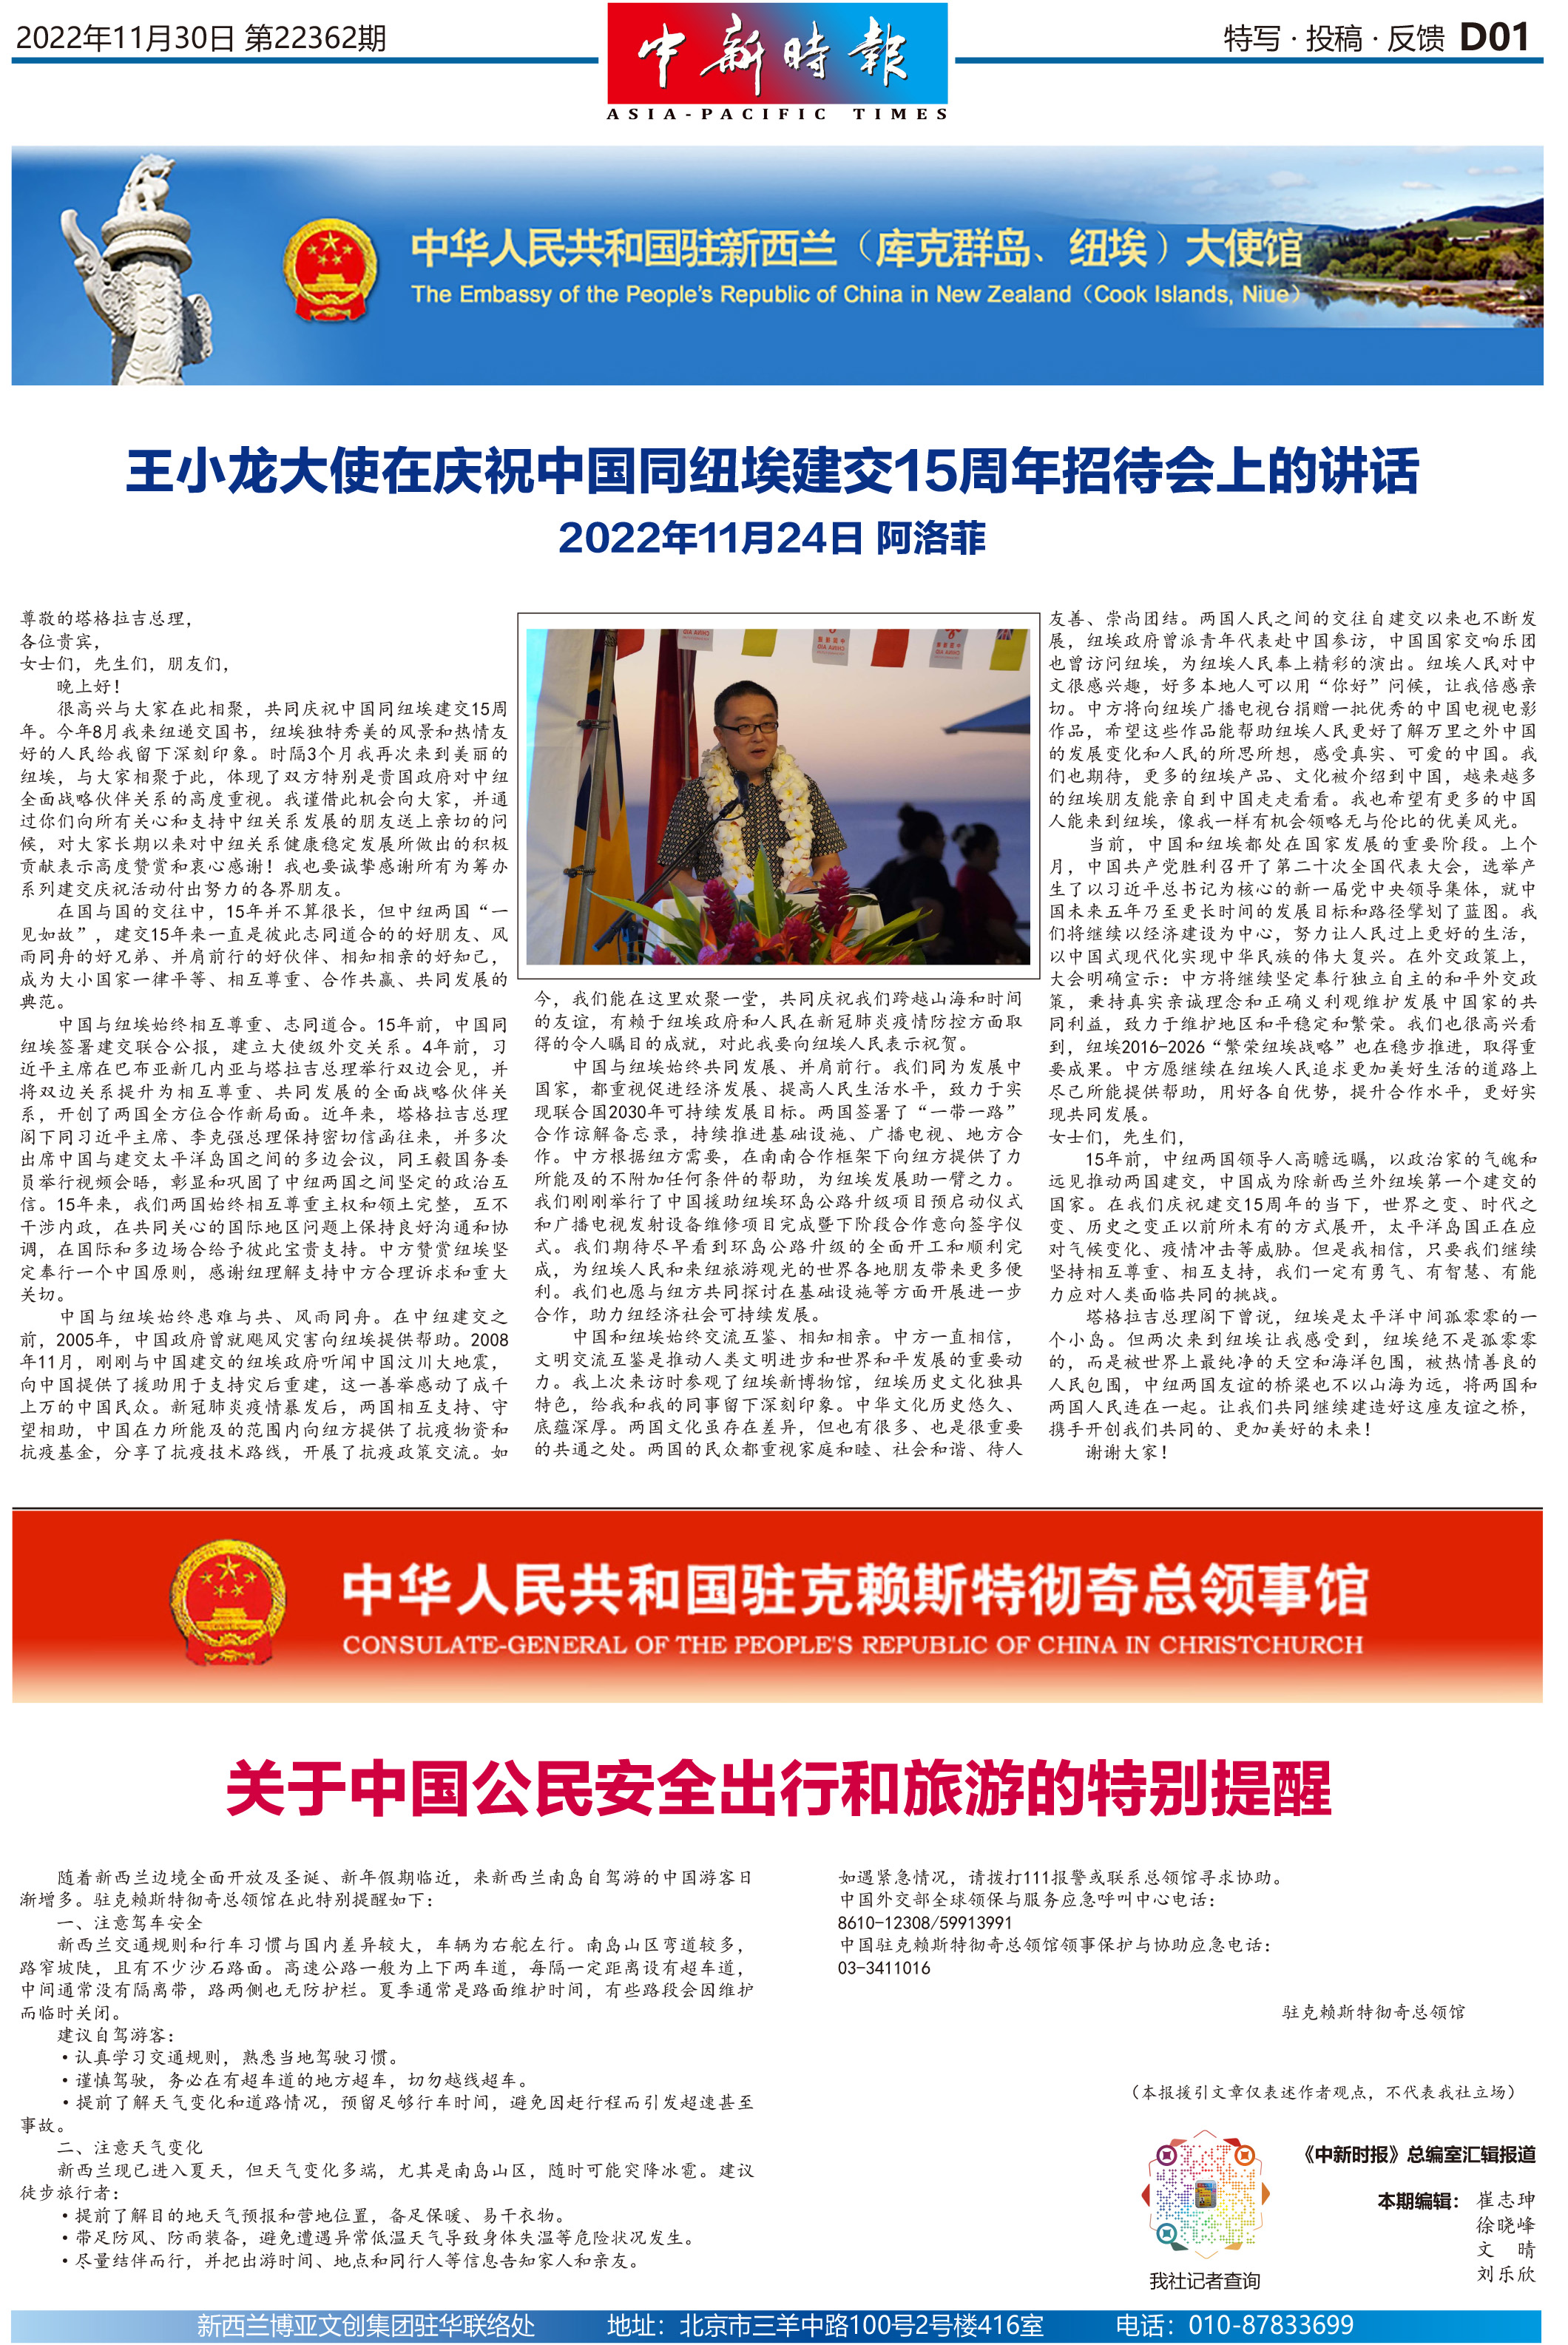 王小龙大使在庆祝中国同纽埃建交15周年招待会上的讲话 / 关于中国公民安全出行和旅游的特别提醒